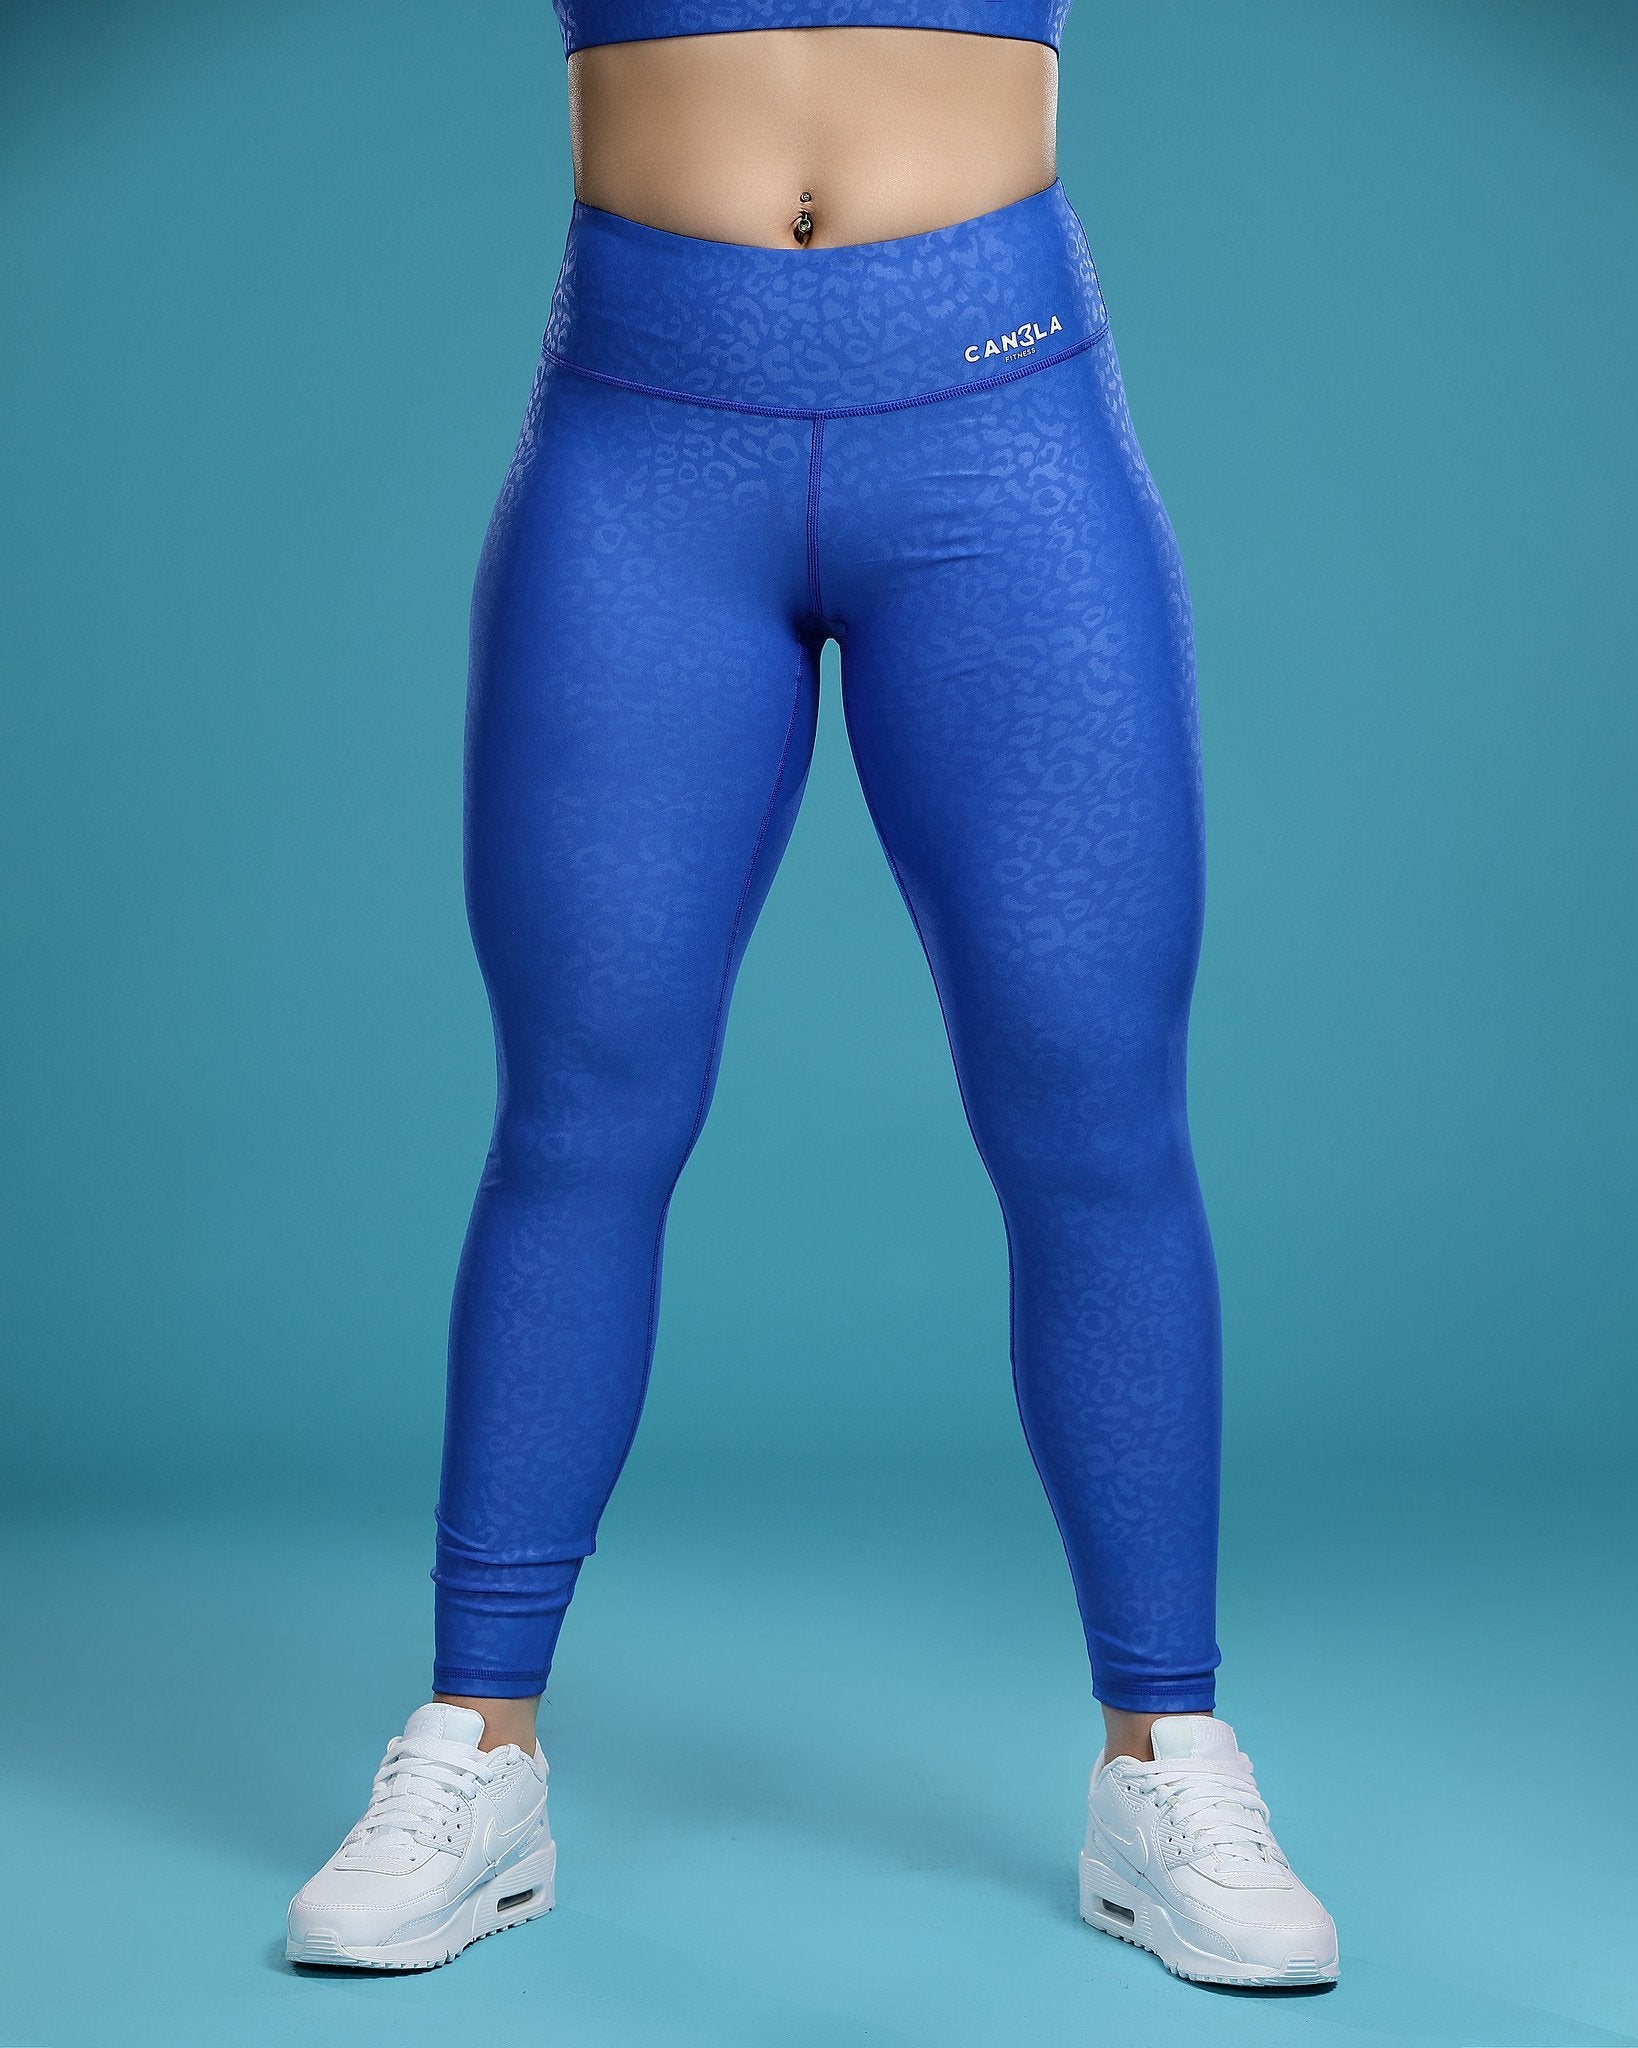 UUE 28Dark Blue Leopard Leggings,Gym leggings for women high